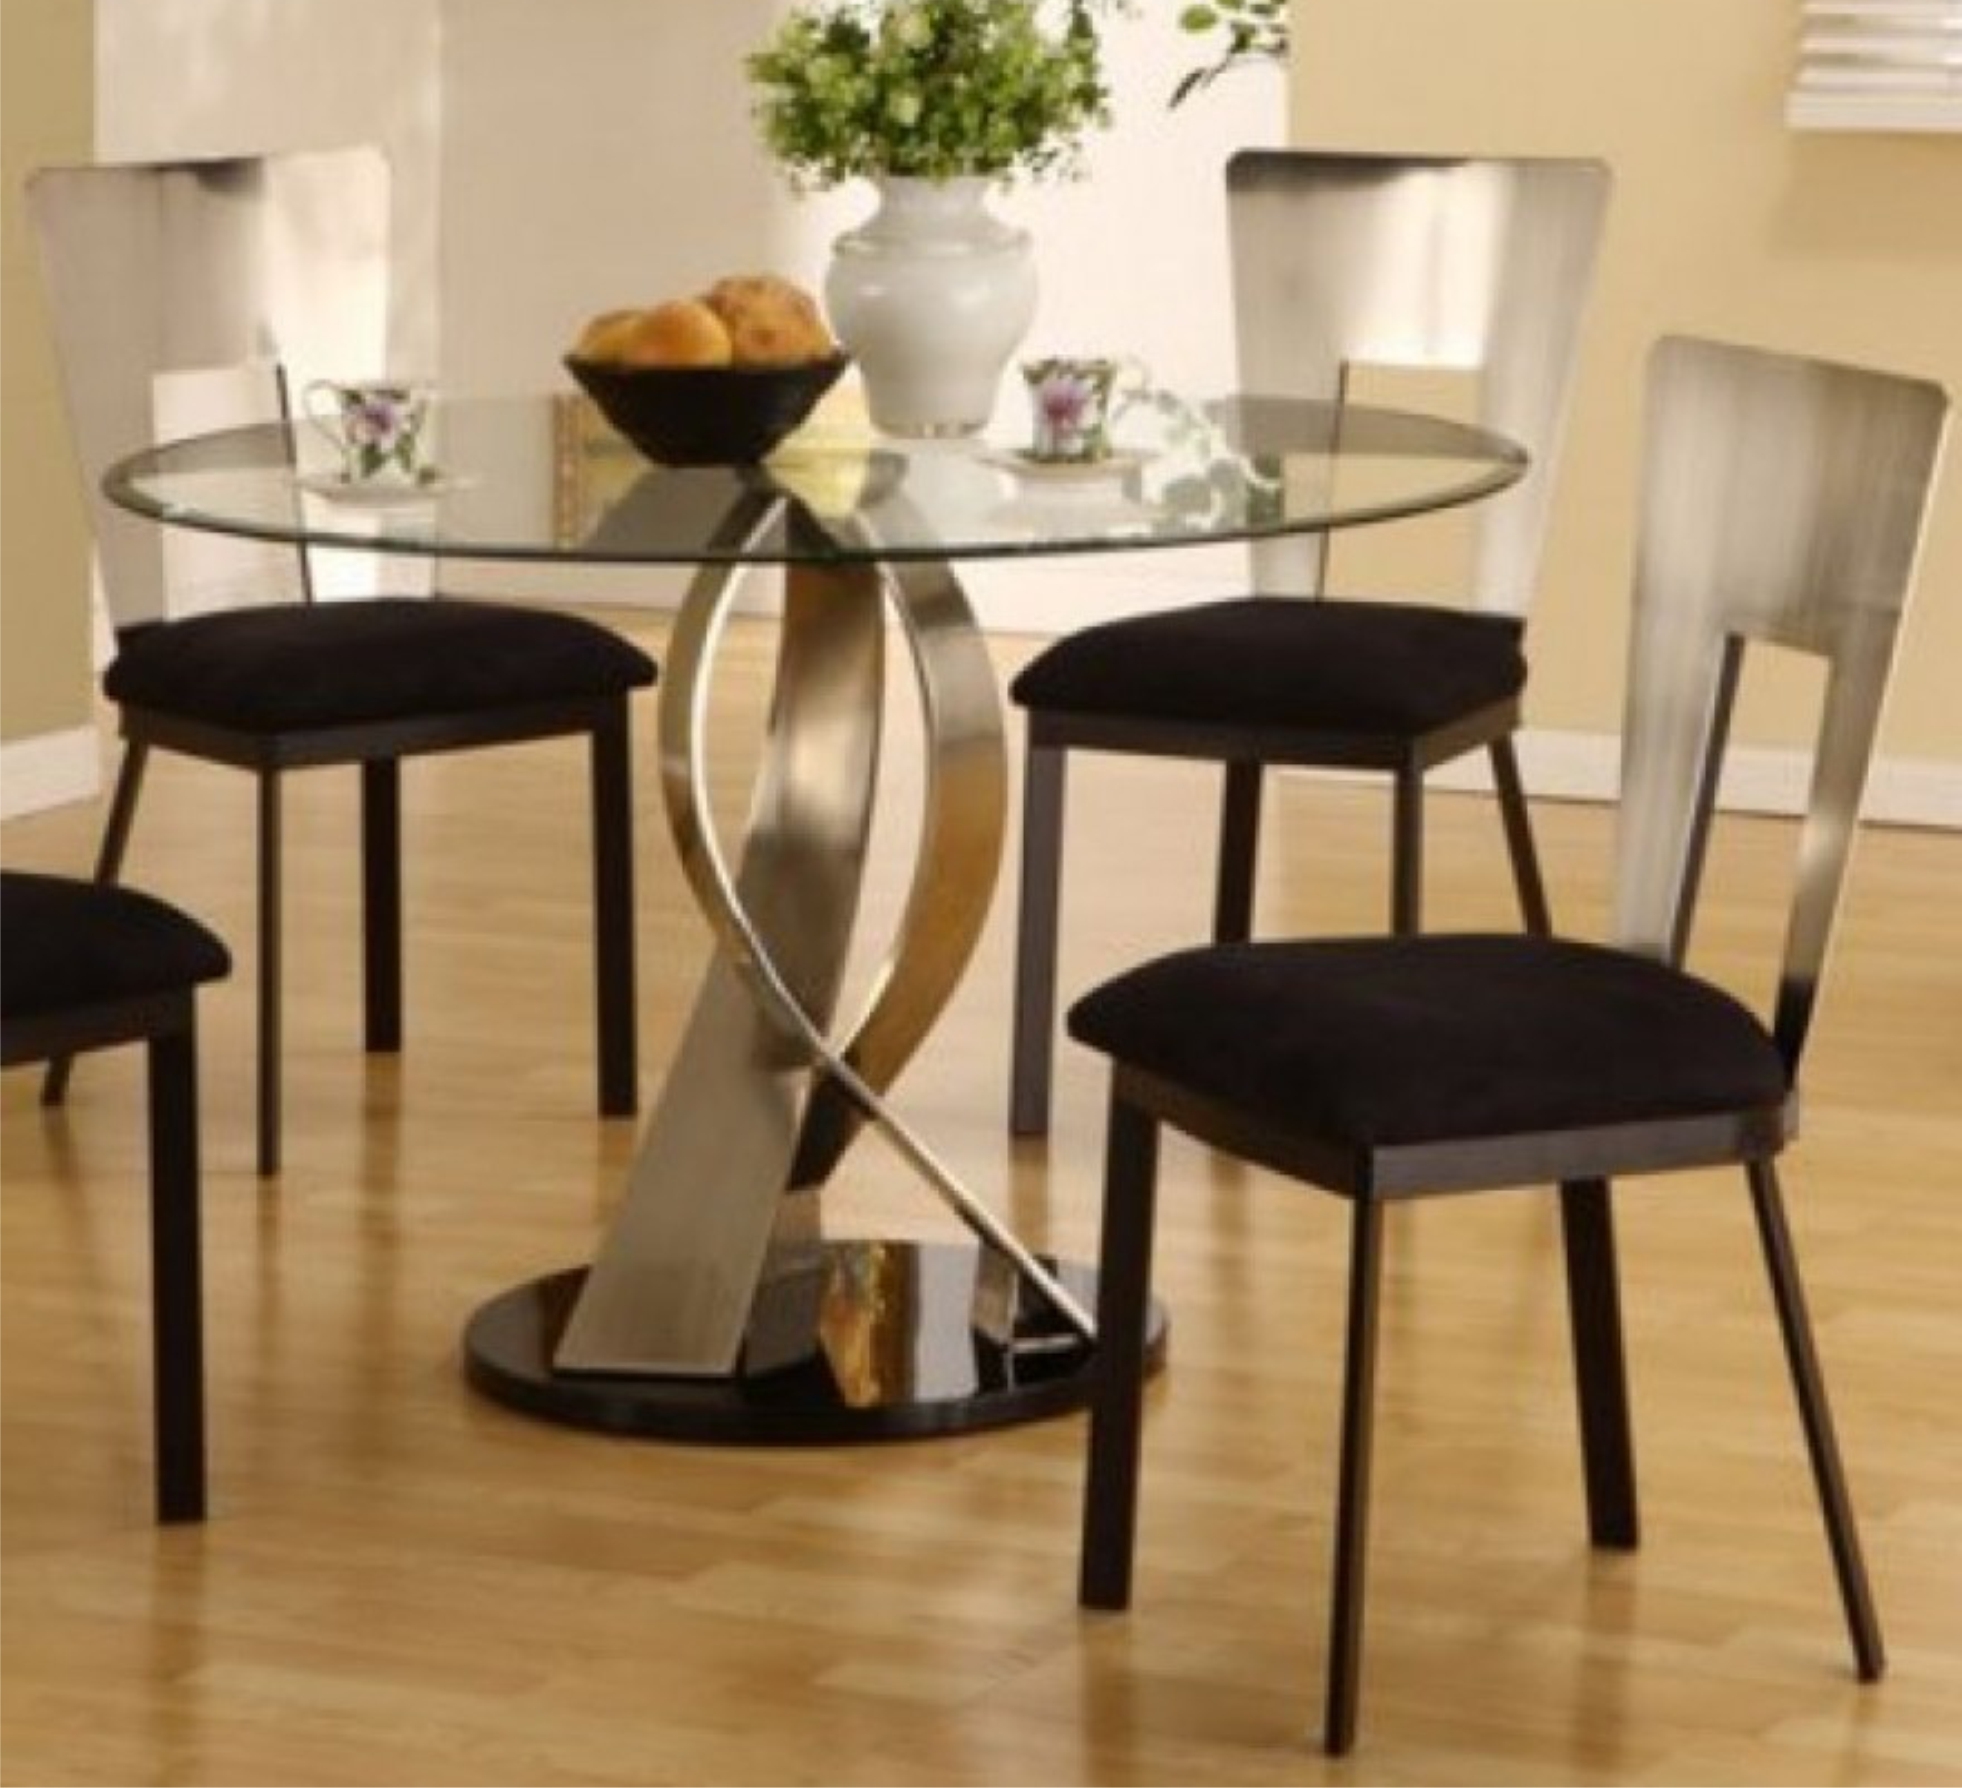 стулья к круглому столу на кухню